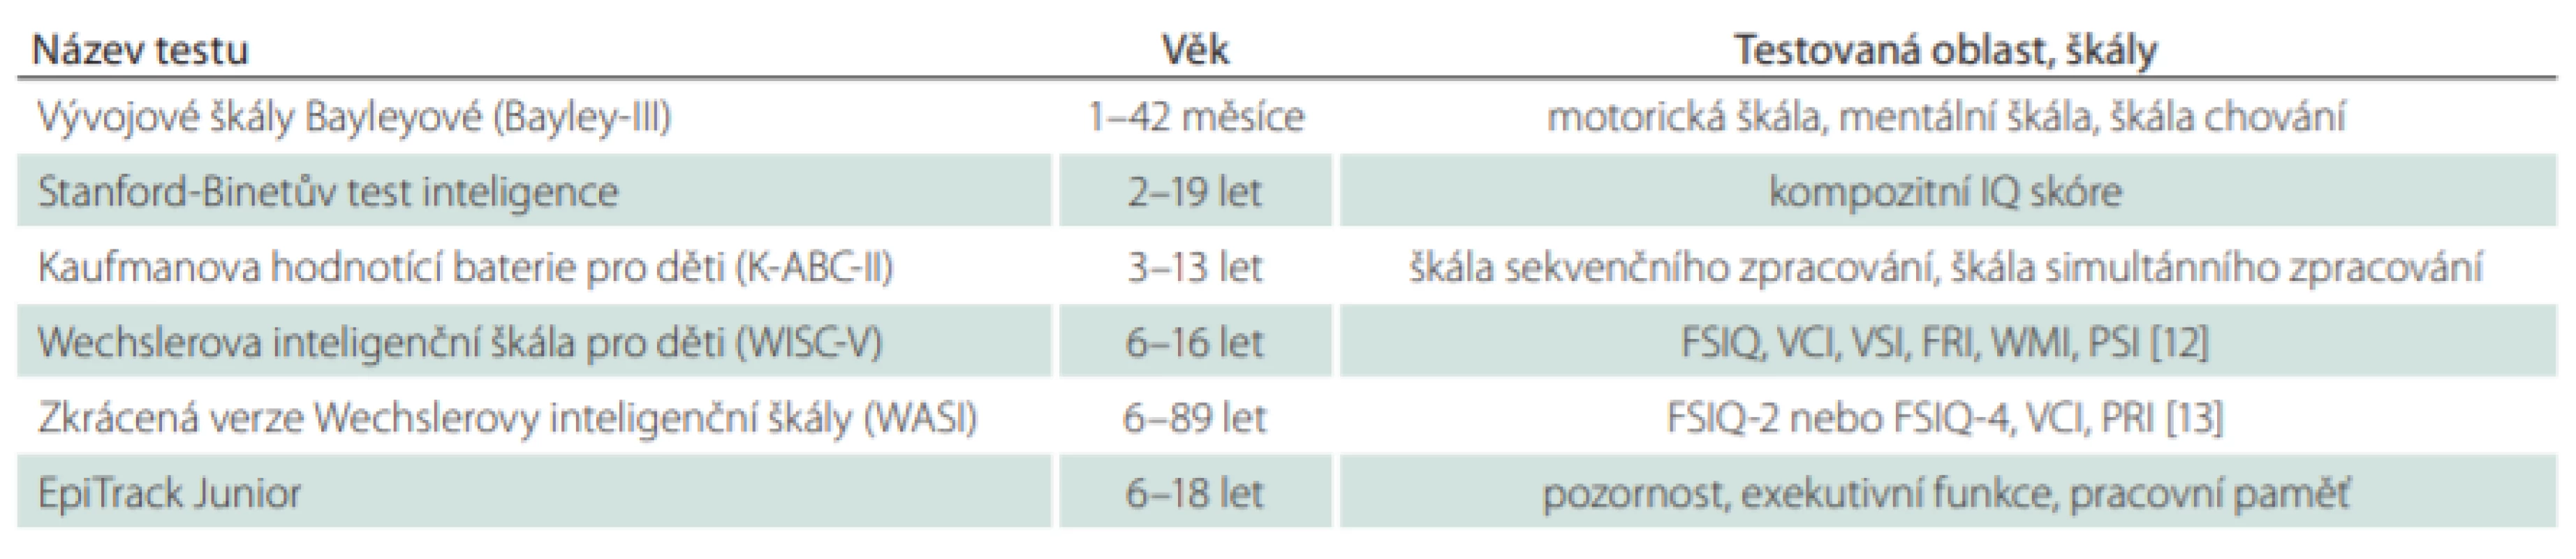 Souhrn nejčastěji používaných neuropsychologických testů u dětí s epilepsií. V ČR je situace lehce odlišná, všechny z uvedených metod nedisponují českými normami, tedy je jejich užití limitováno.